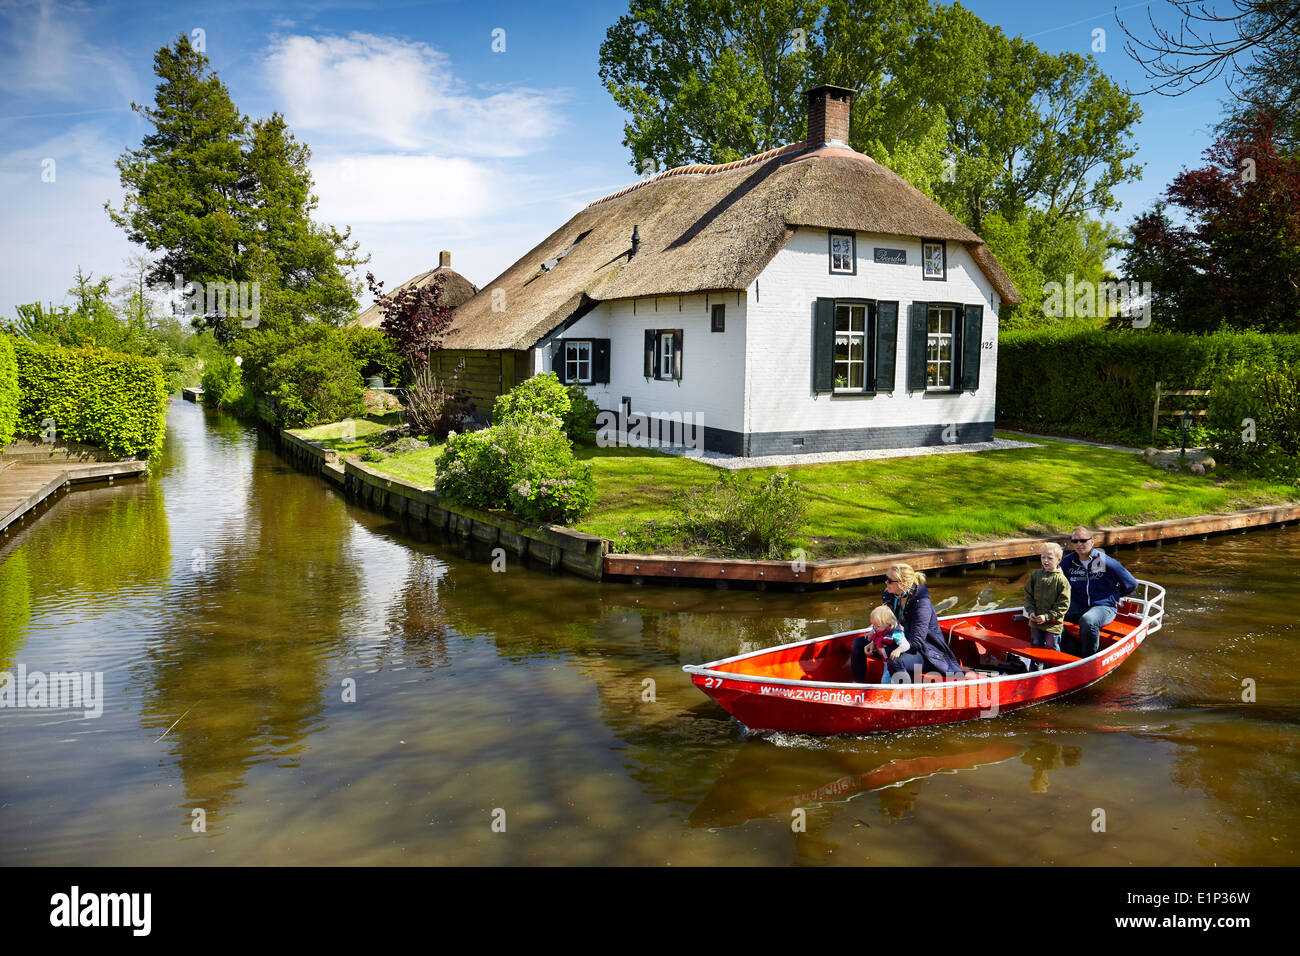 Village de Giethoorn, bateau de tourisme sur le canal - Hollande, Pays-Bas Banque D'Images